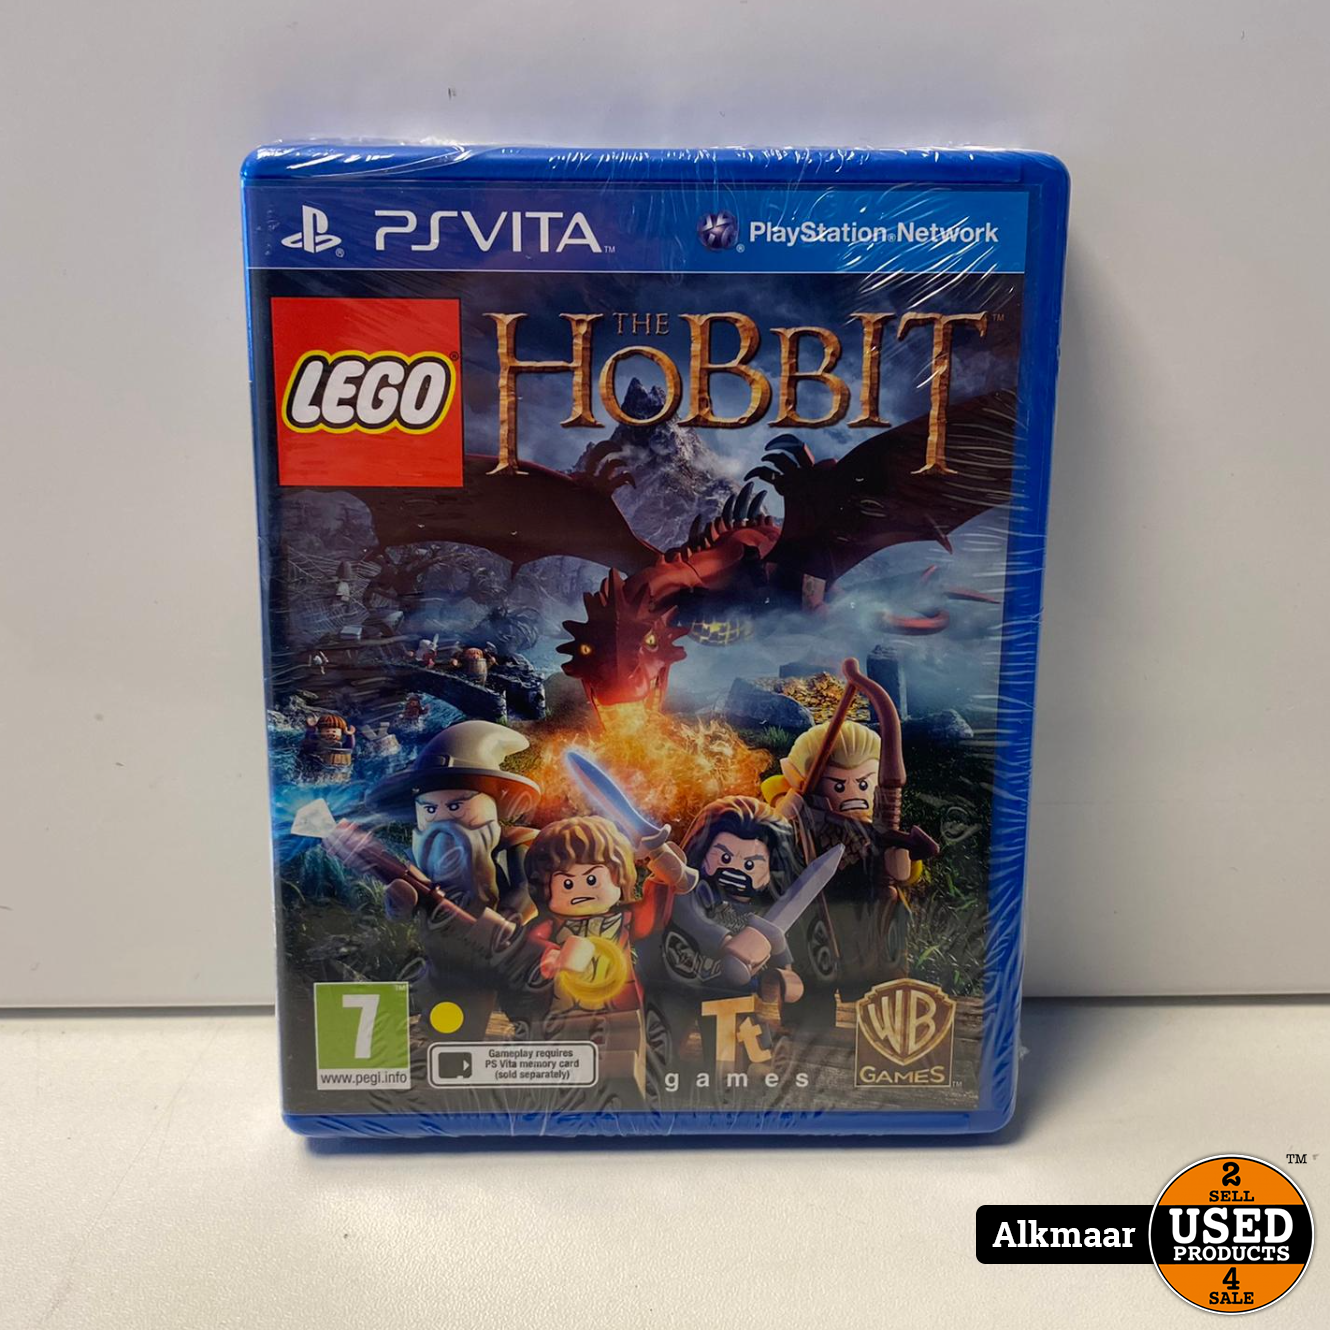 Lego The Hobbit | PS Vita | Nieuw! - Used Products Alkmaar